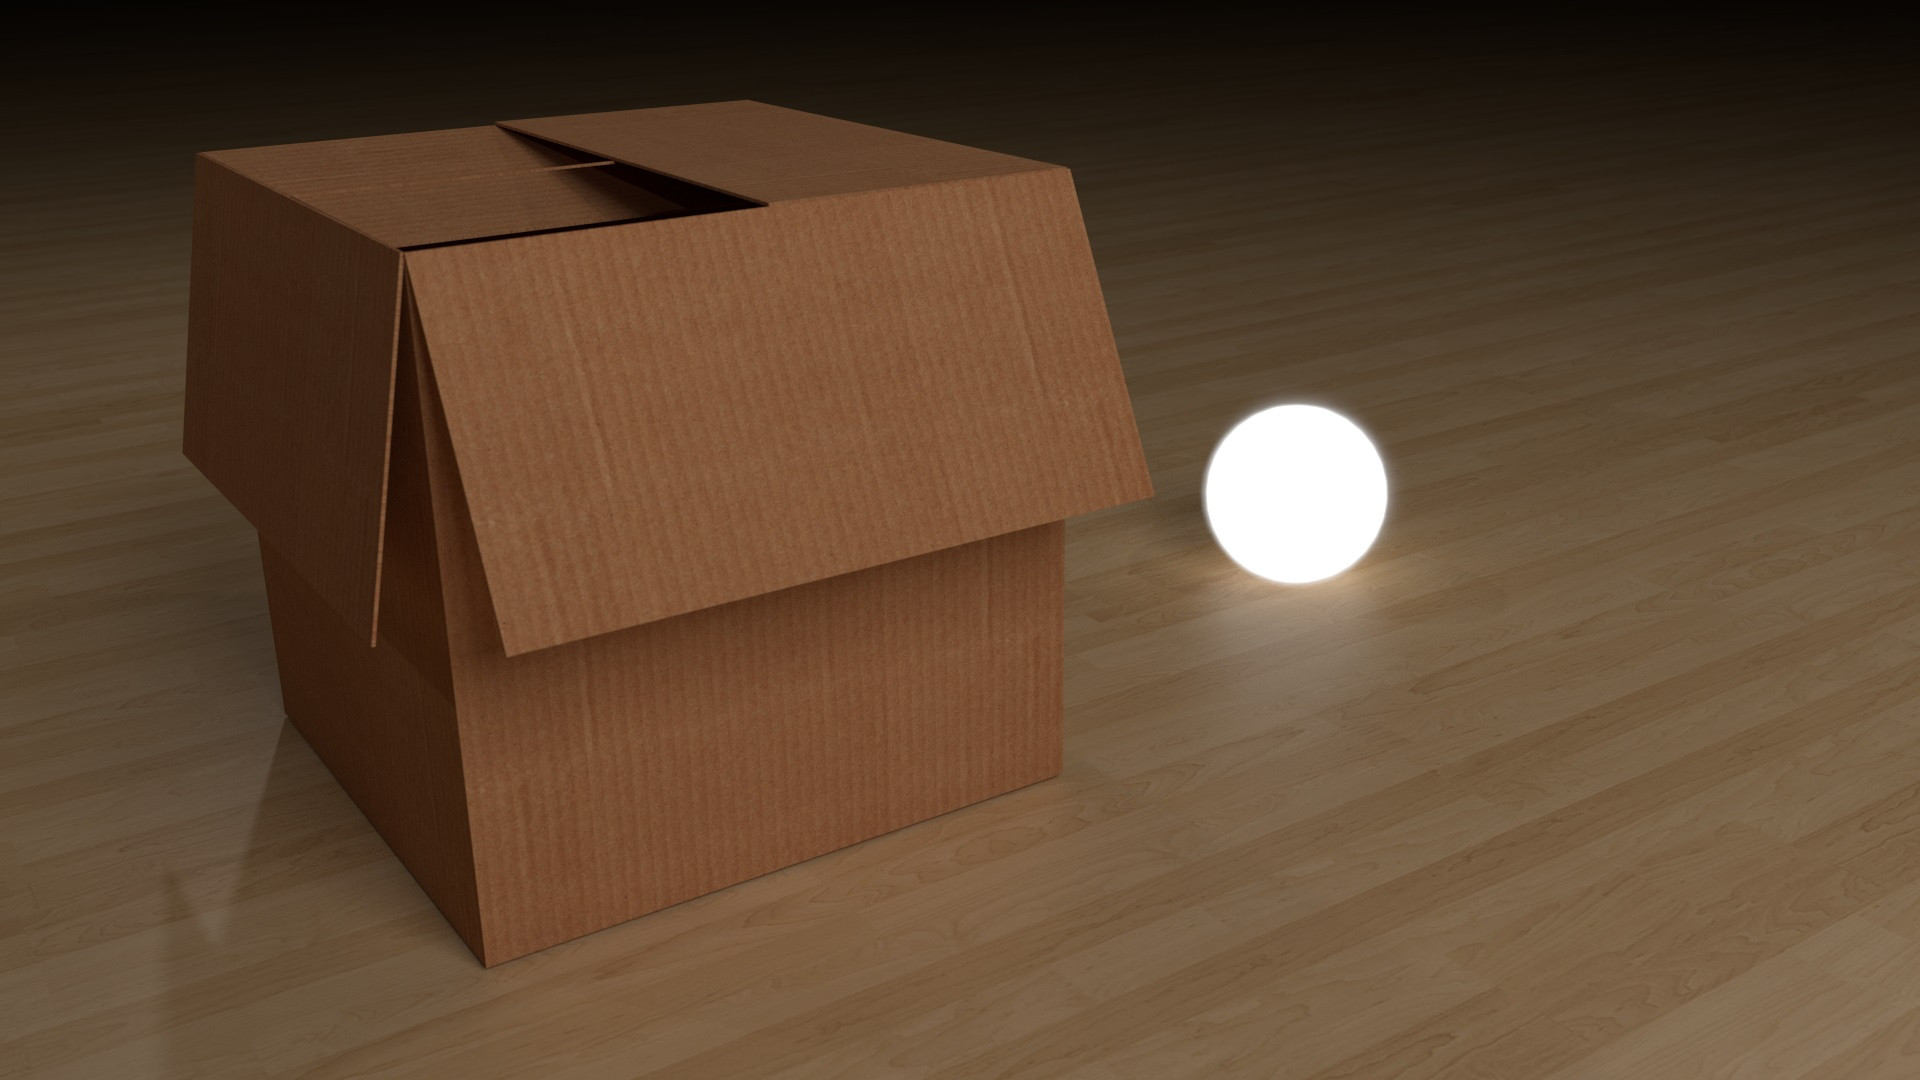 Cardboard Box First Render Focused Critiques Blender Artists